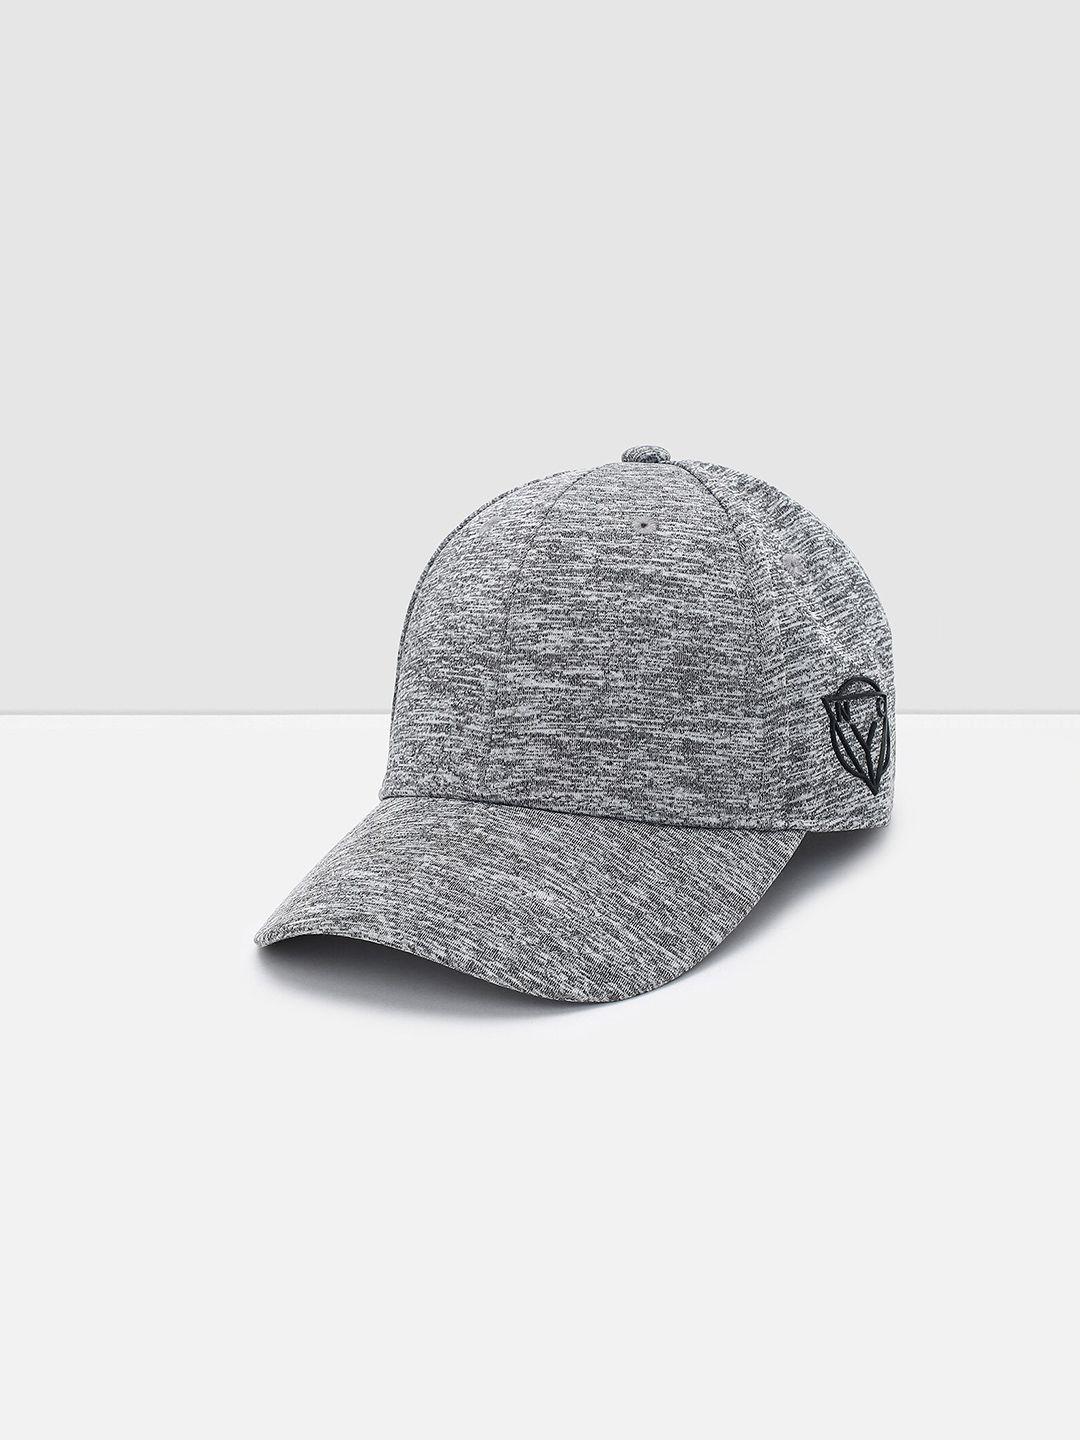 max men self design baseball cap